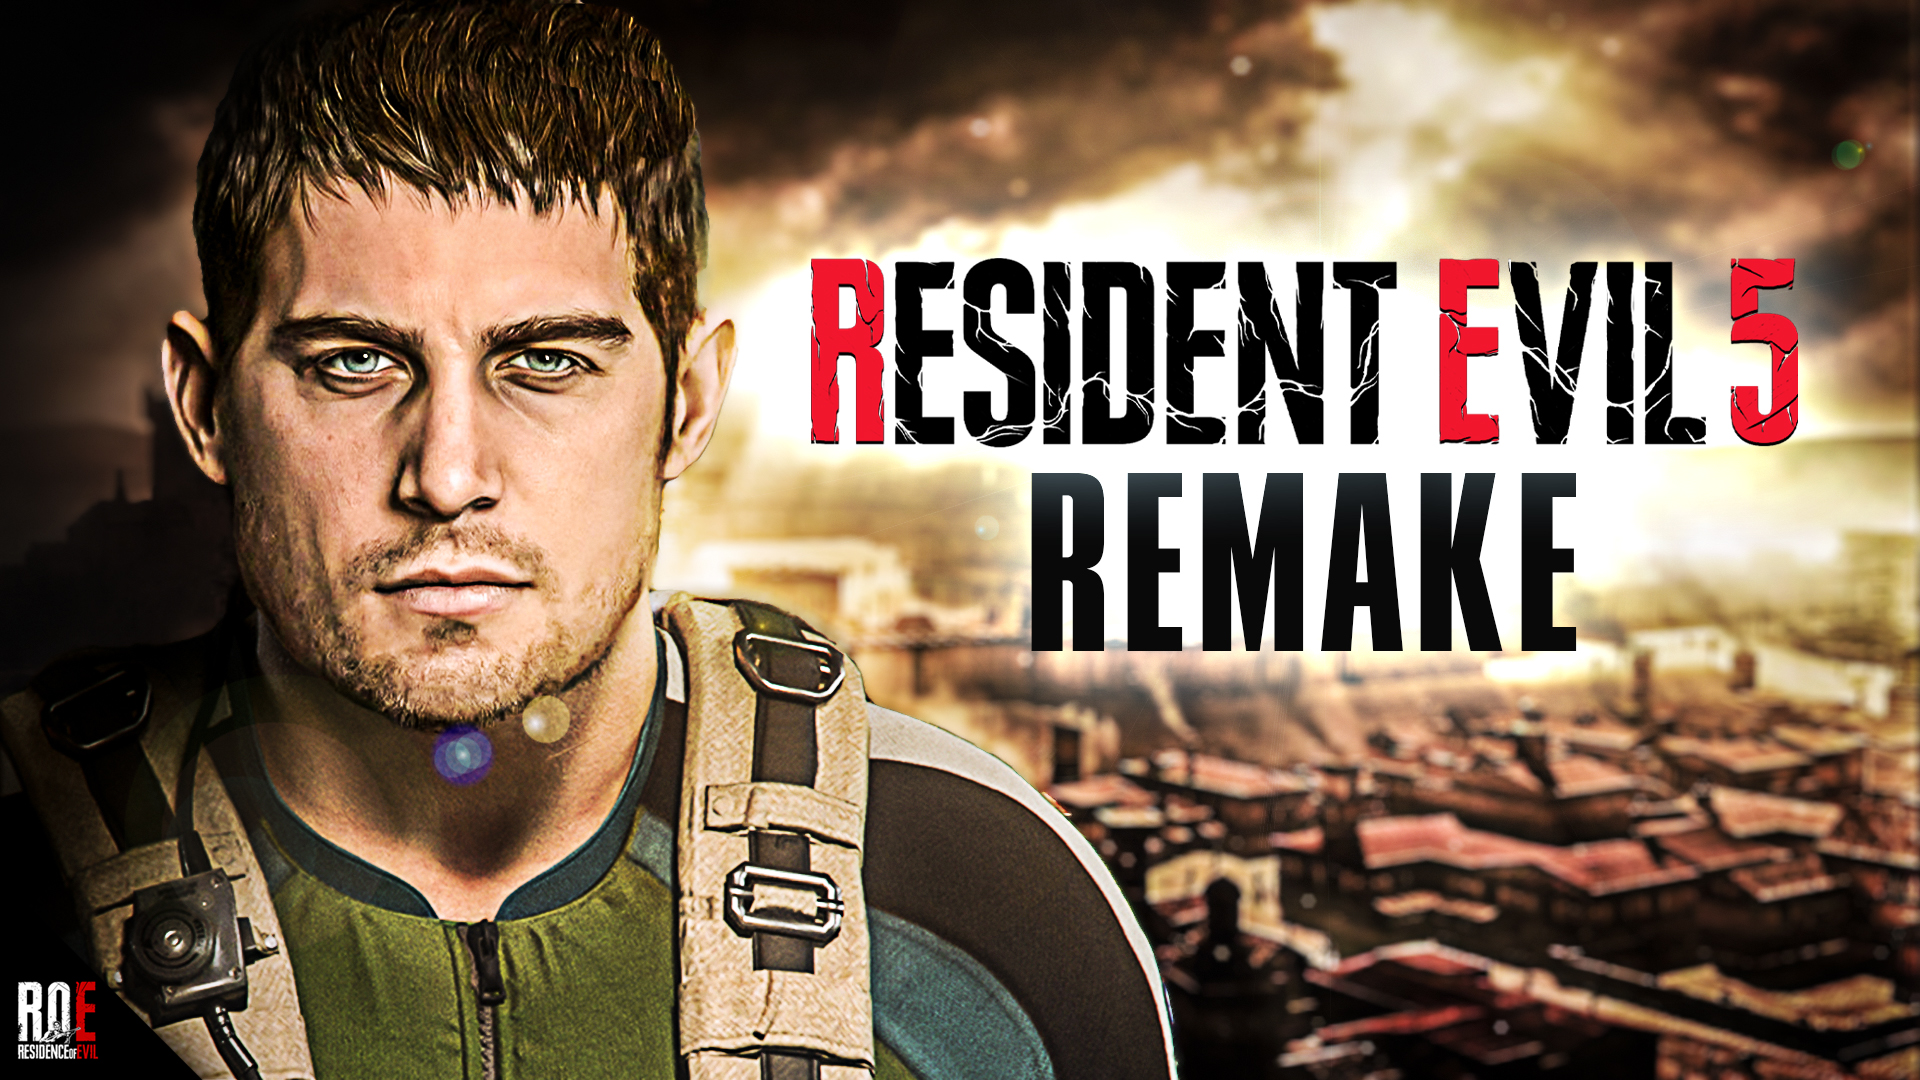 RESIDENCE of EVIL on X: RESIDENT EVIL 5: REMAKE, Capcom's Next Remake